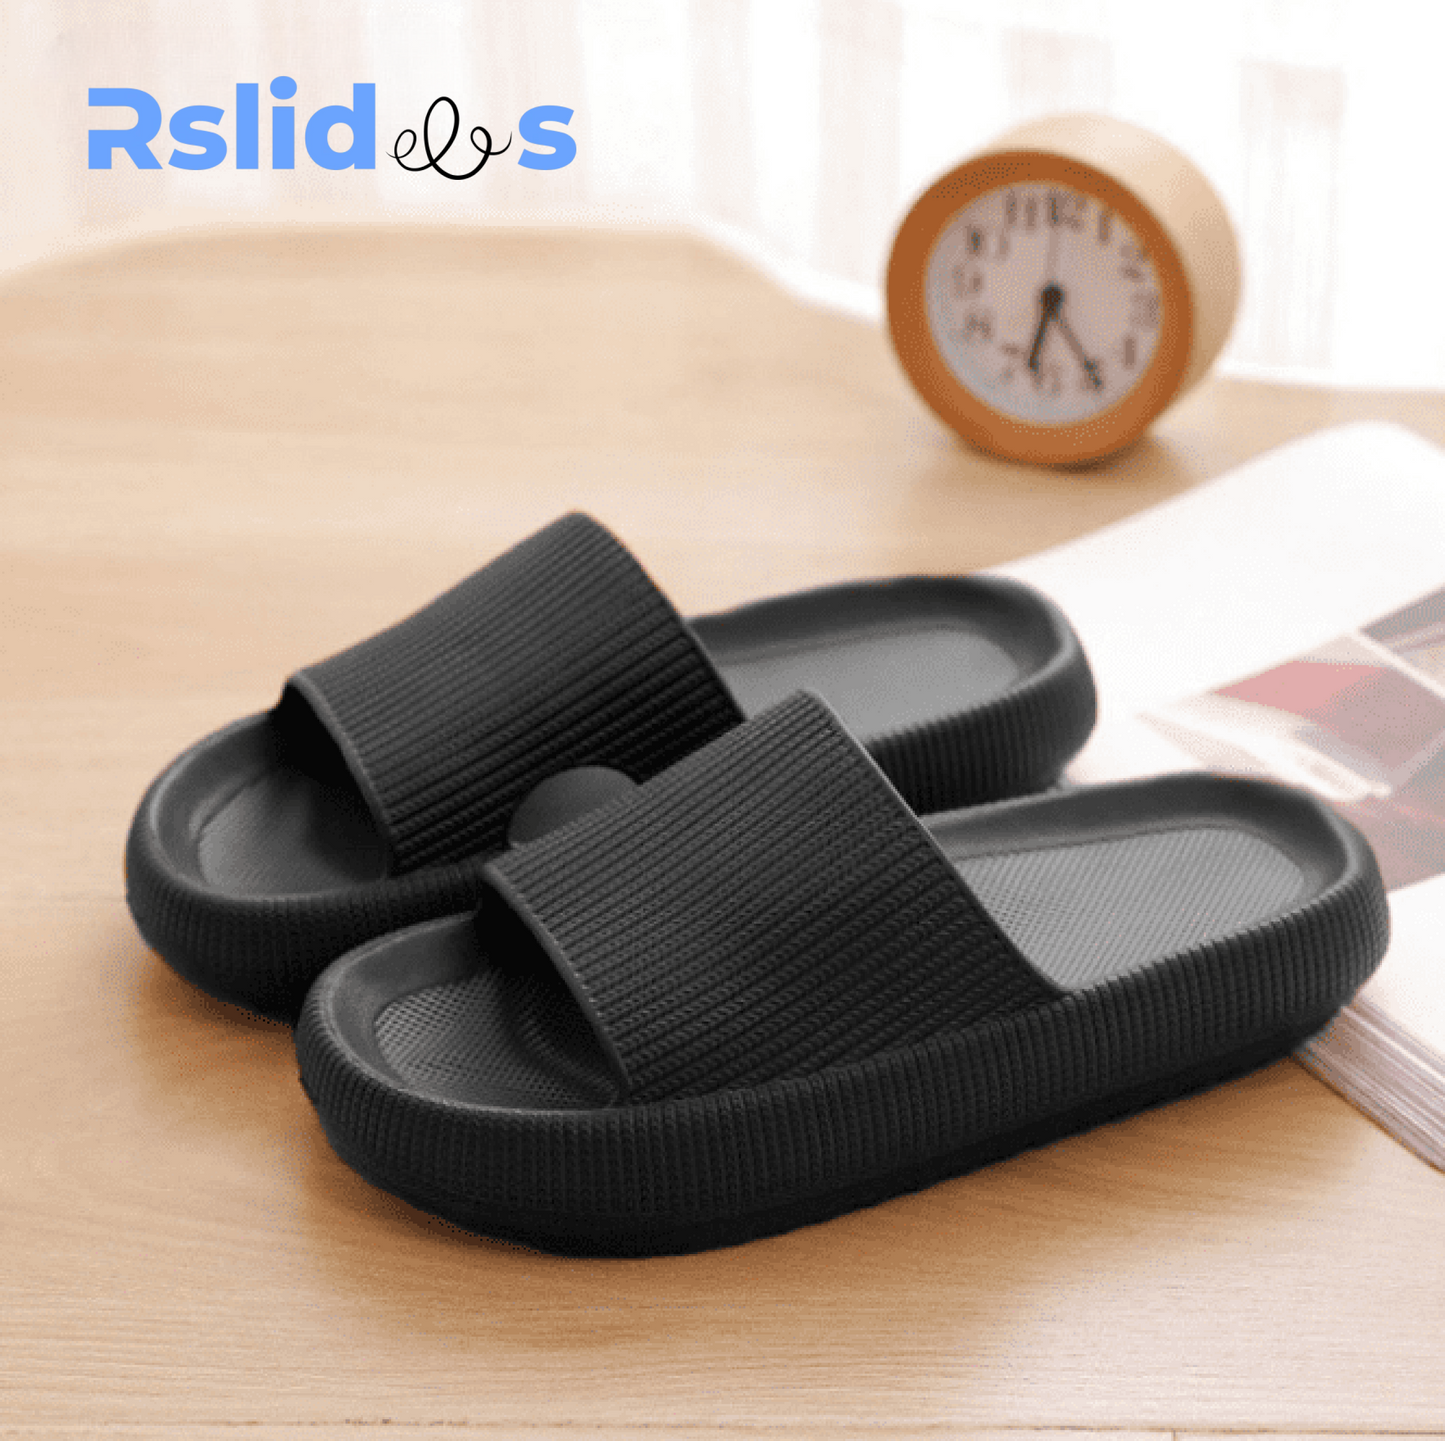 RSLIDES™ - Cloud sandals